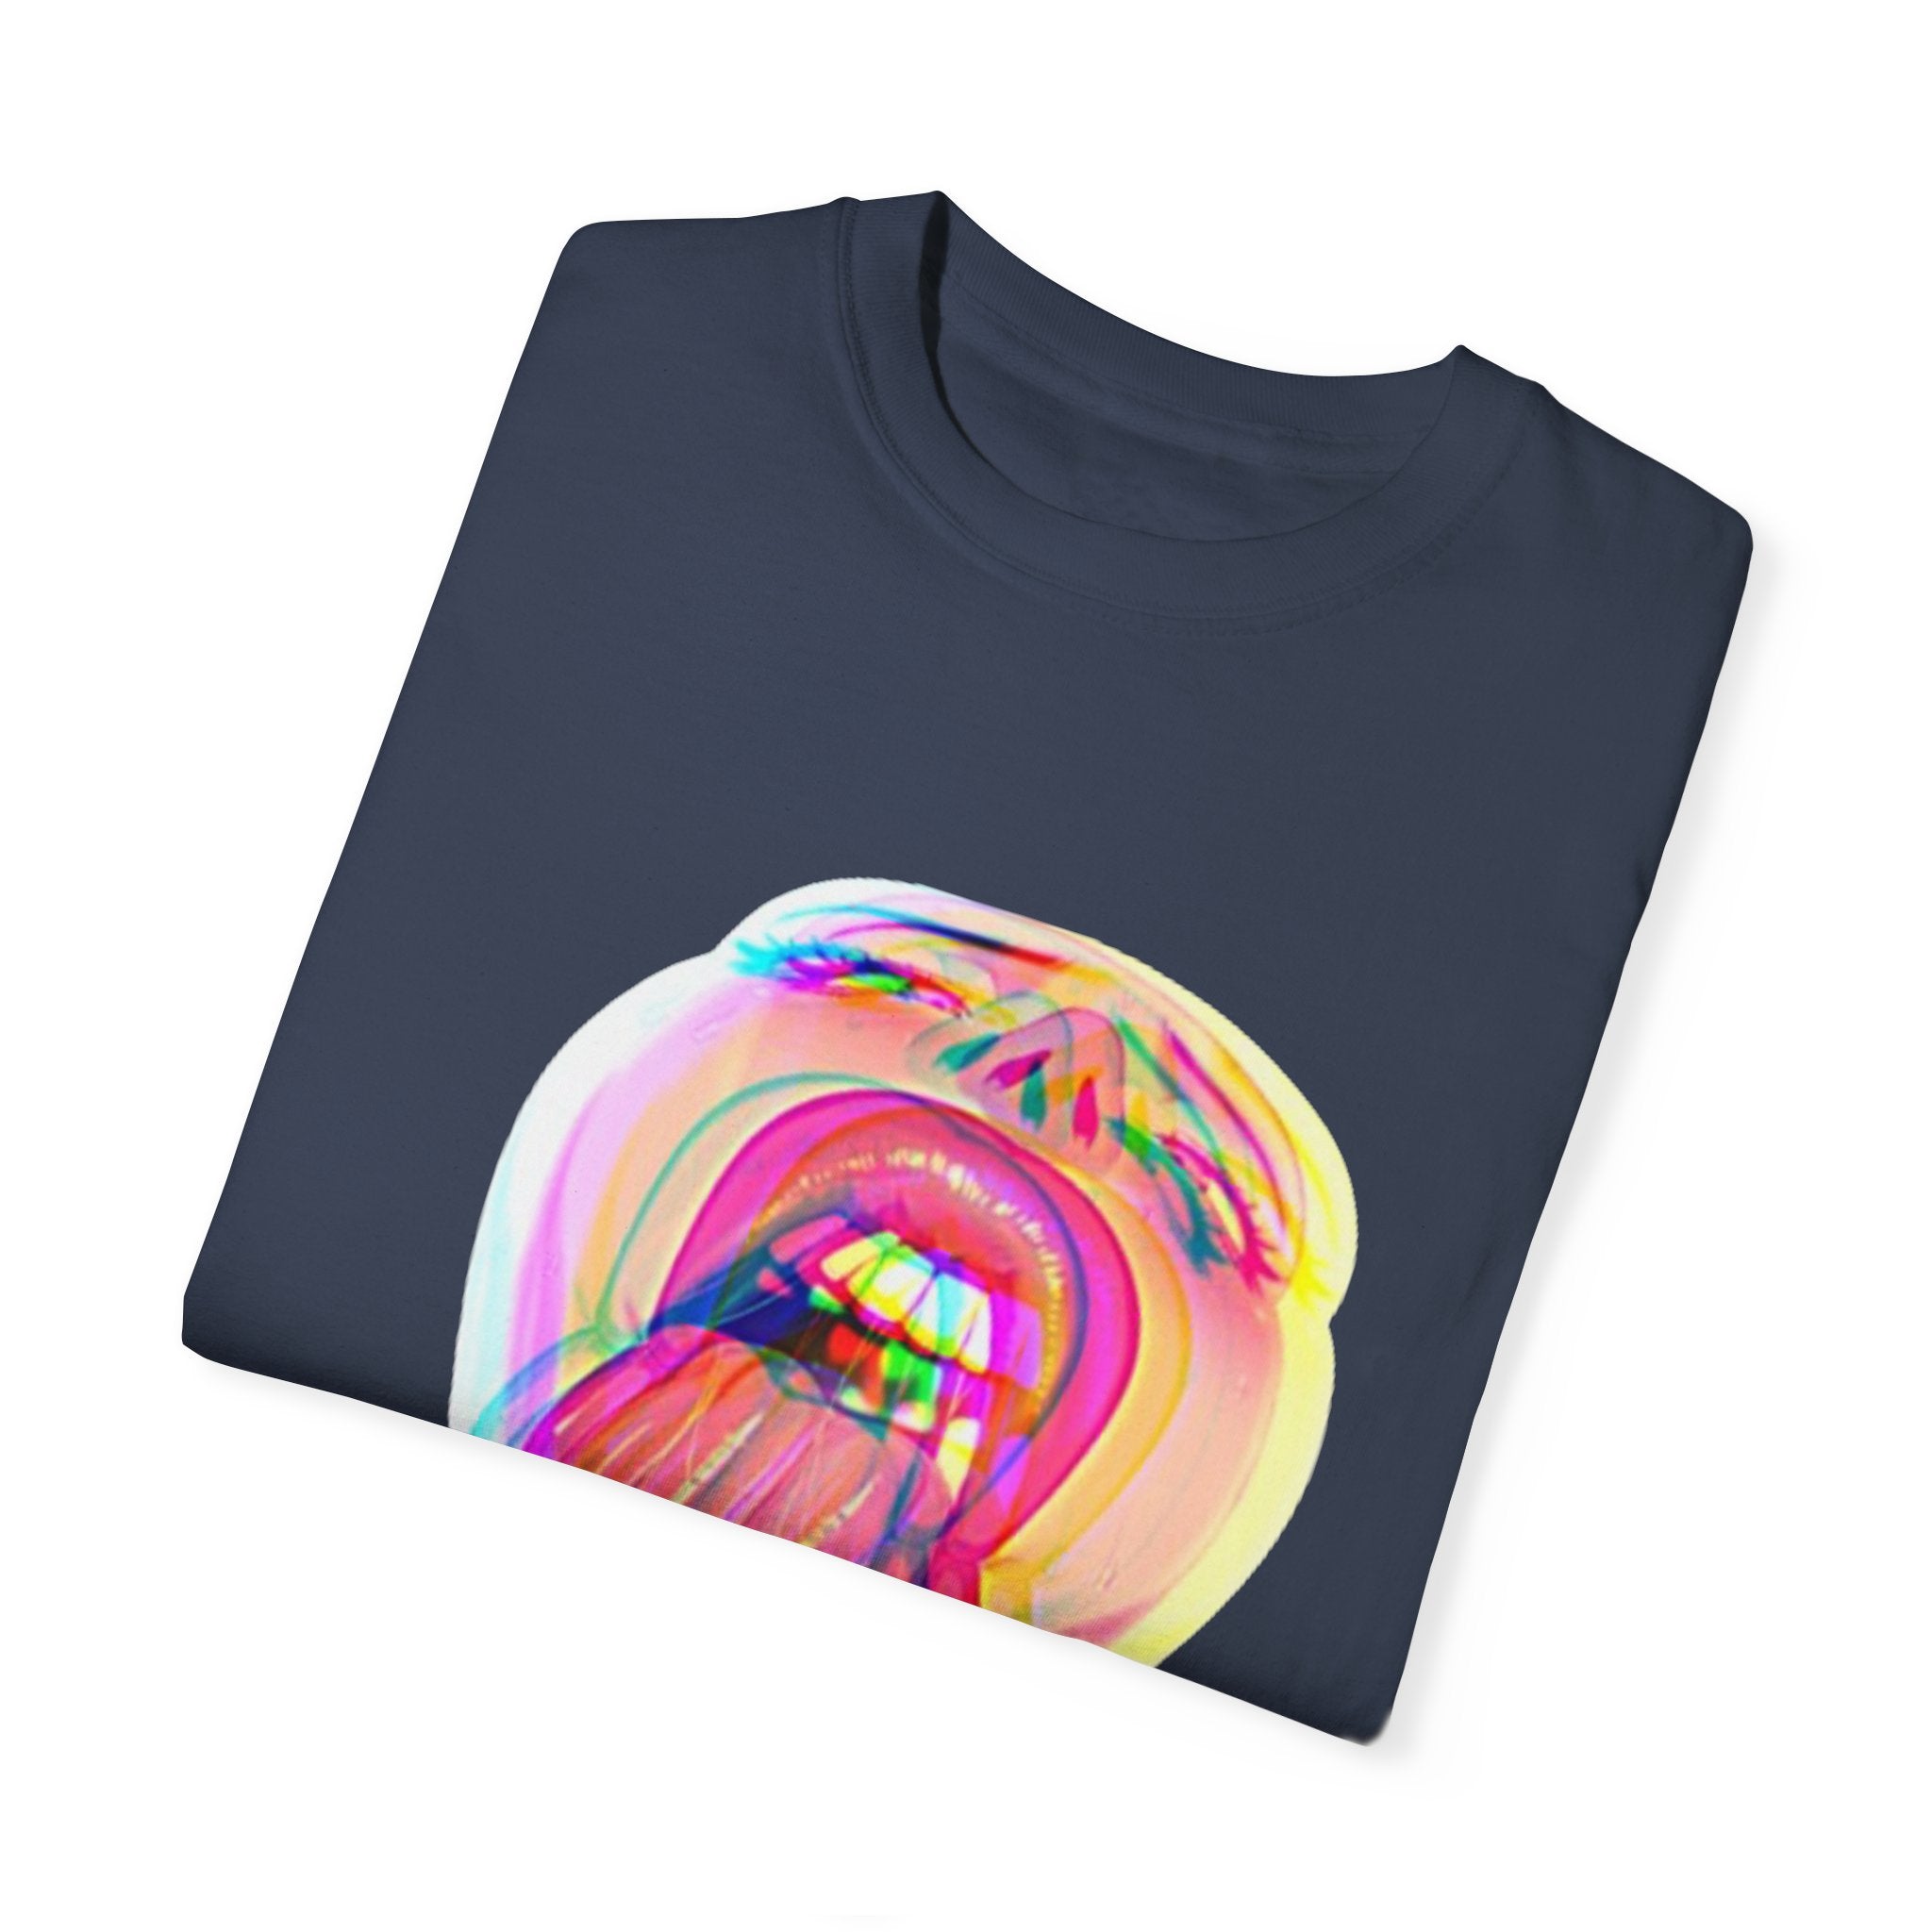 Open Wide Garment-Dyed T-shirt